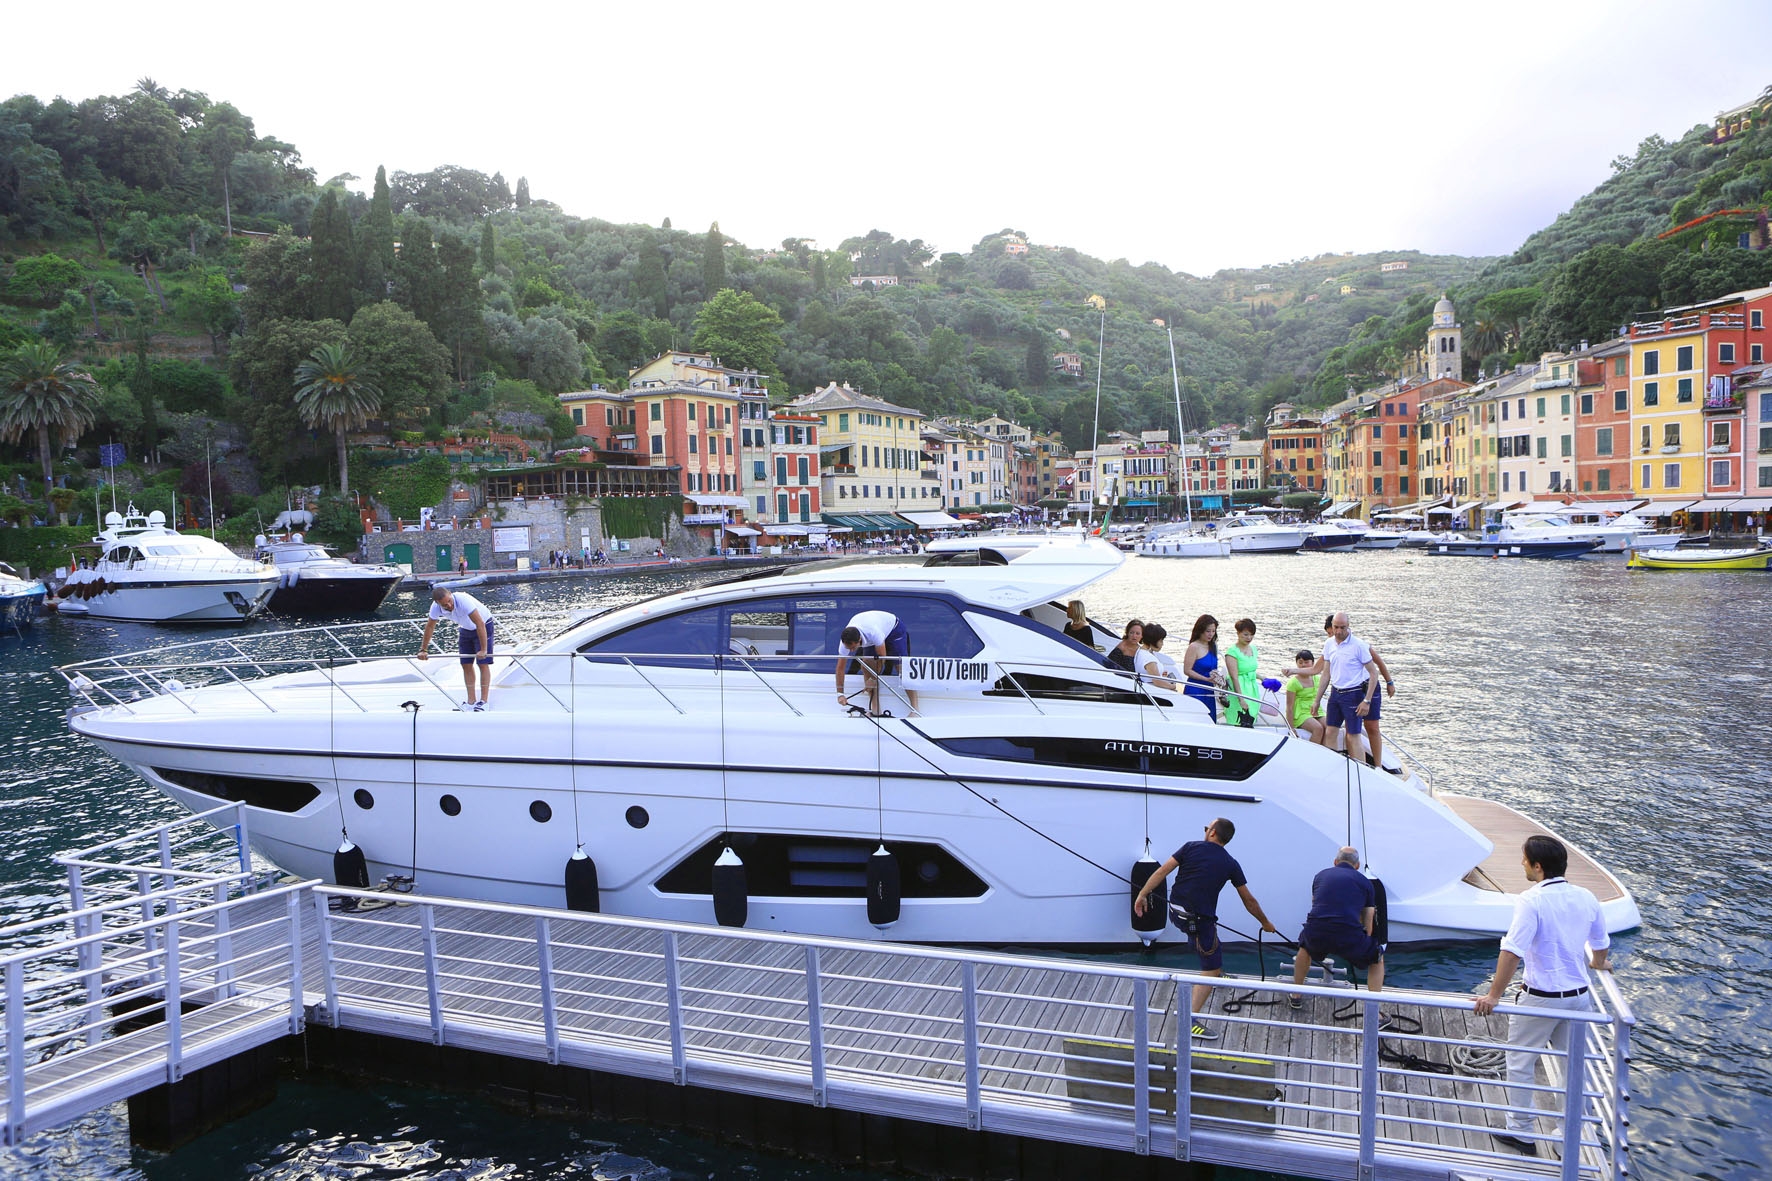 Azimut Yachts and Bulgari's elite jewel display in Portofino